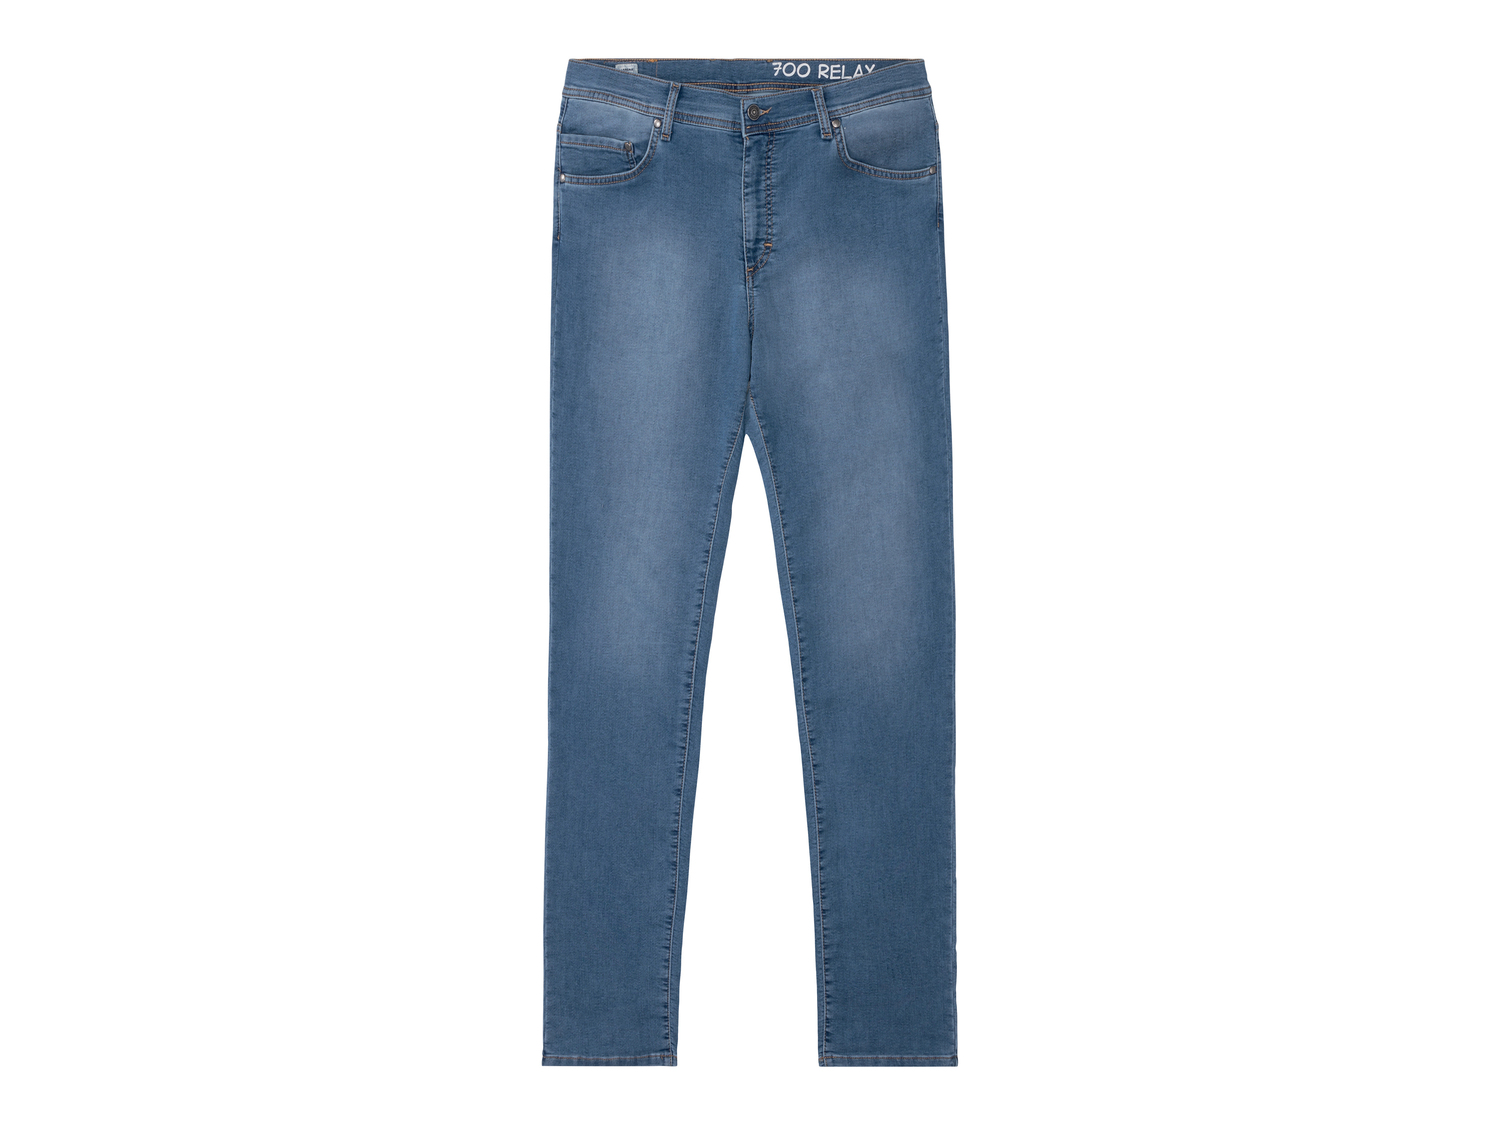 Jeans Denim Relax da uomo Carrera, prezzo 29.99 &#8364; 
Misure: 48-54
Taglie ...